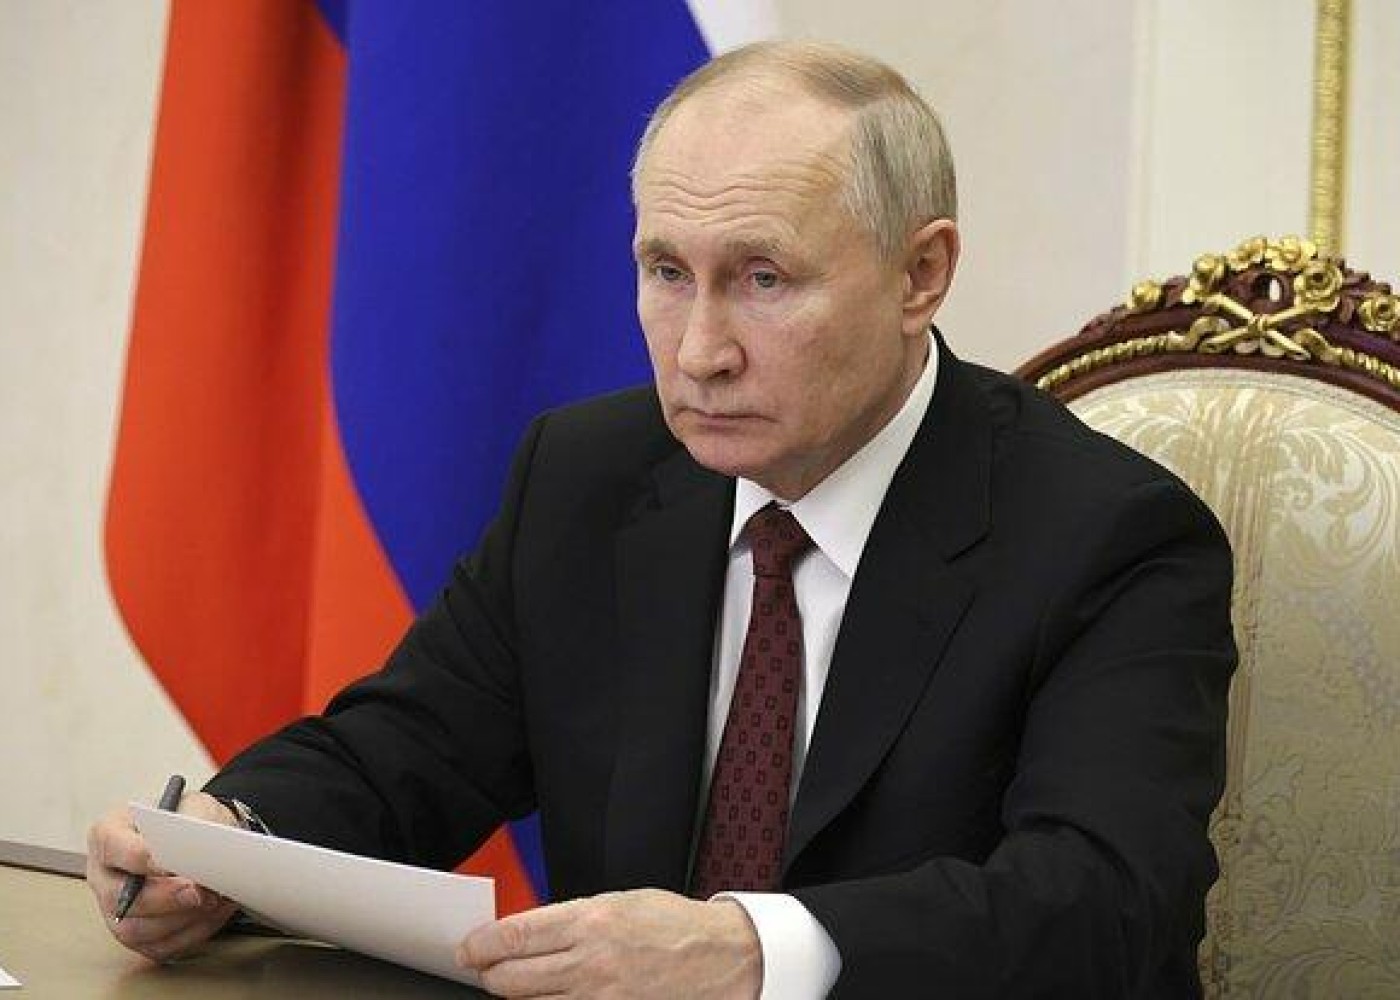 Putin müdafiə və xarici işlər naziri postuna namizədləriniaçıqladı